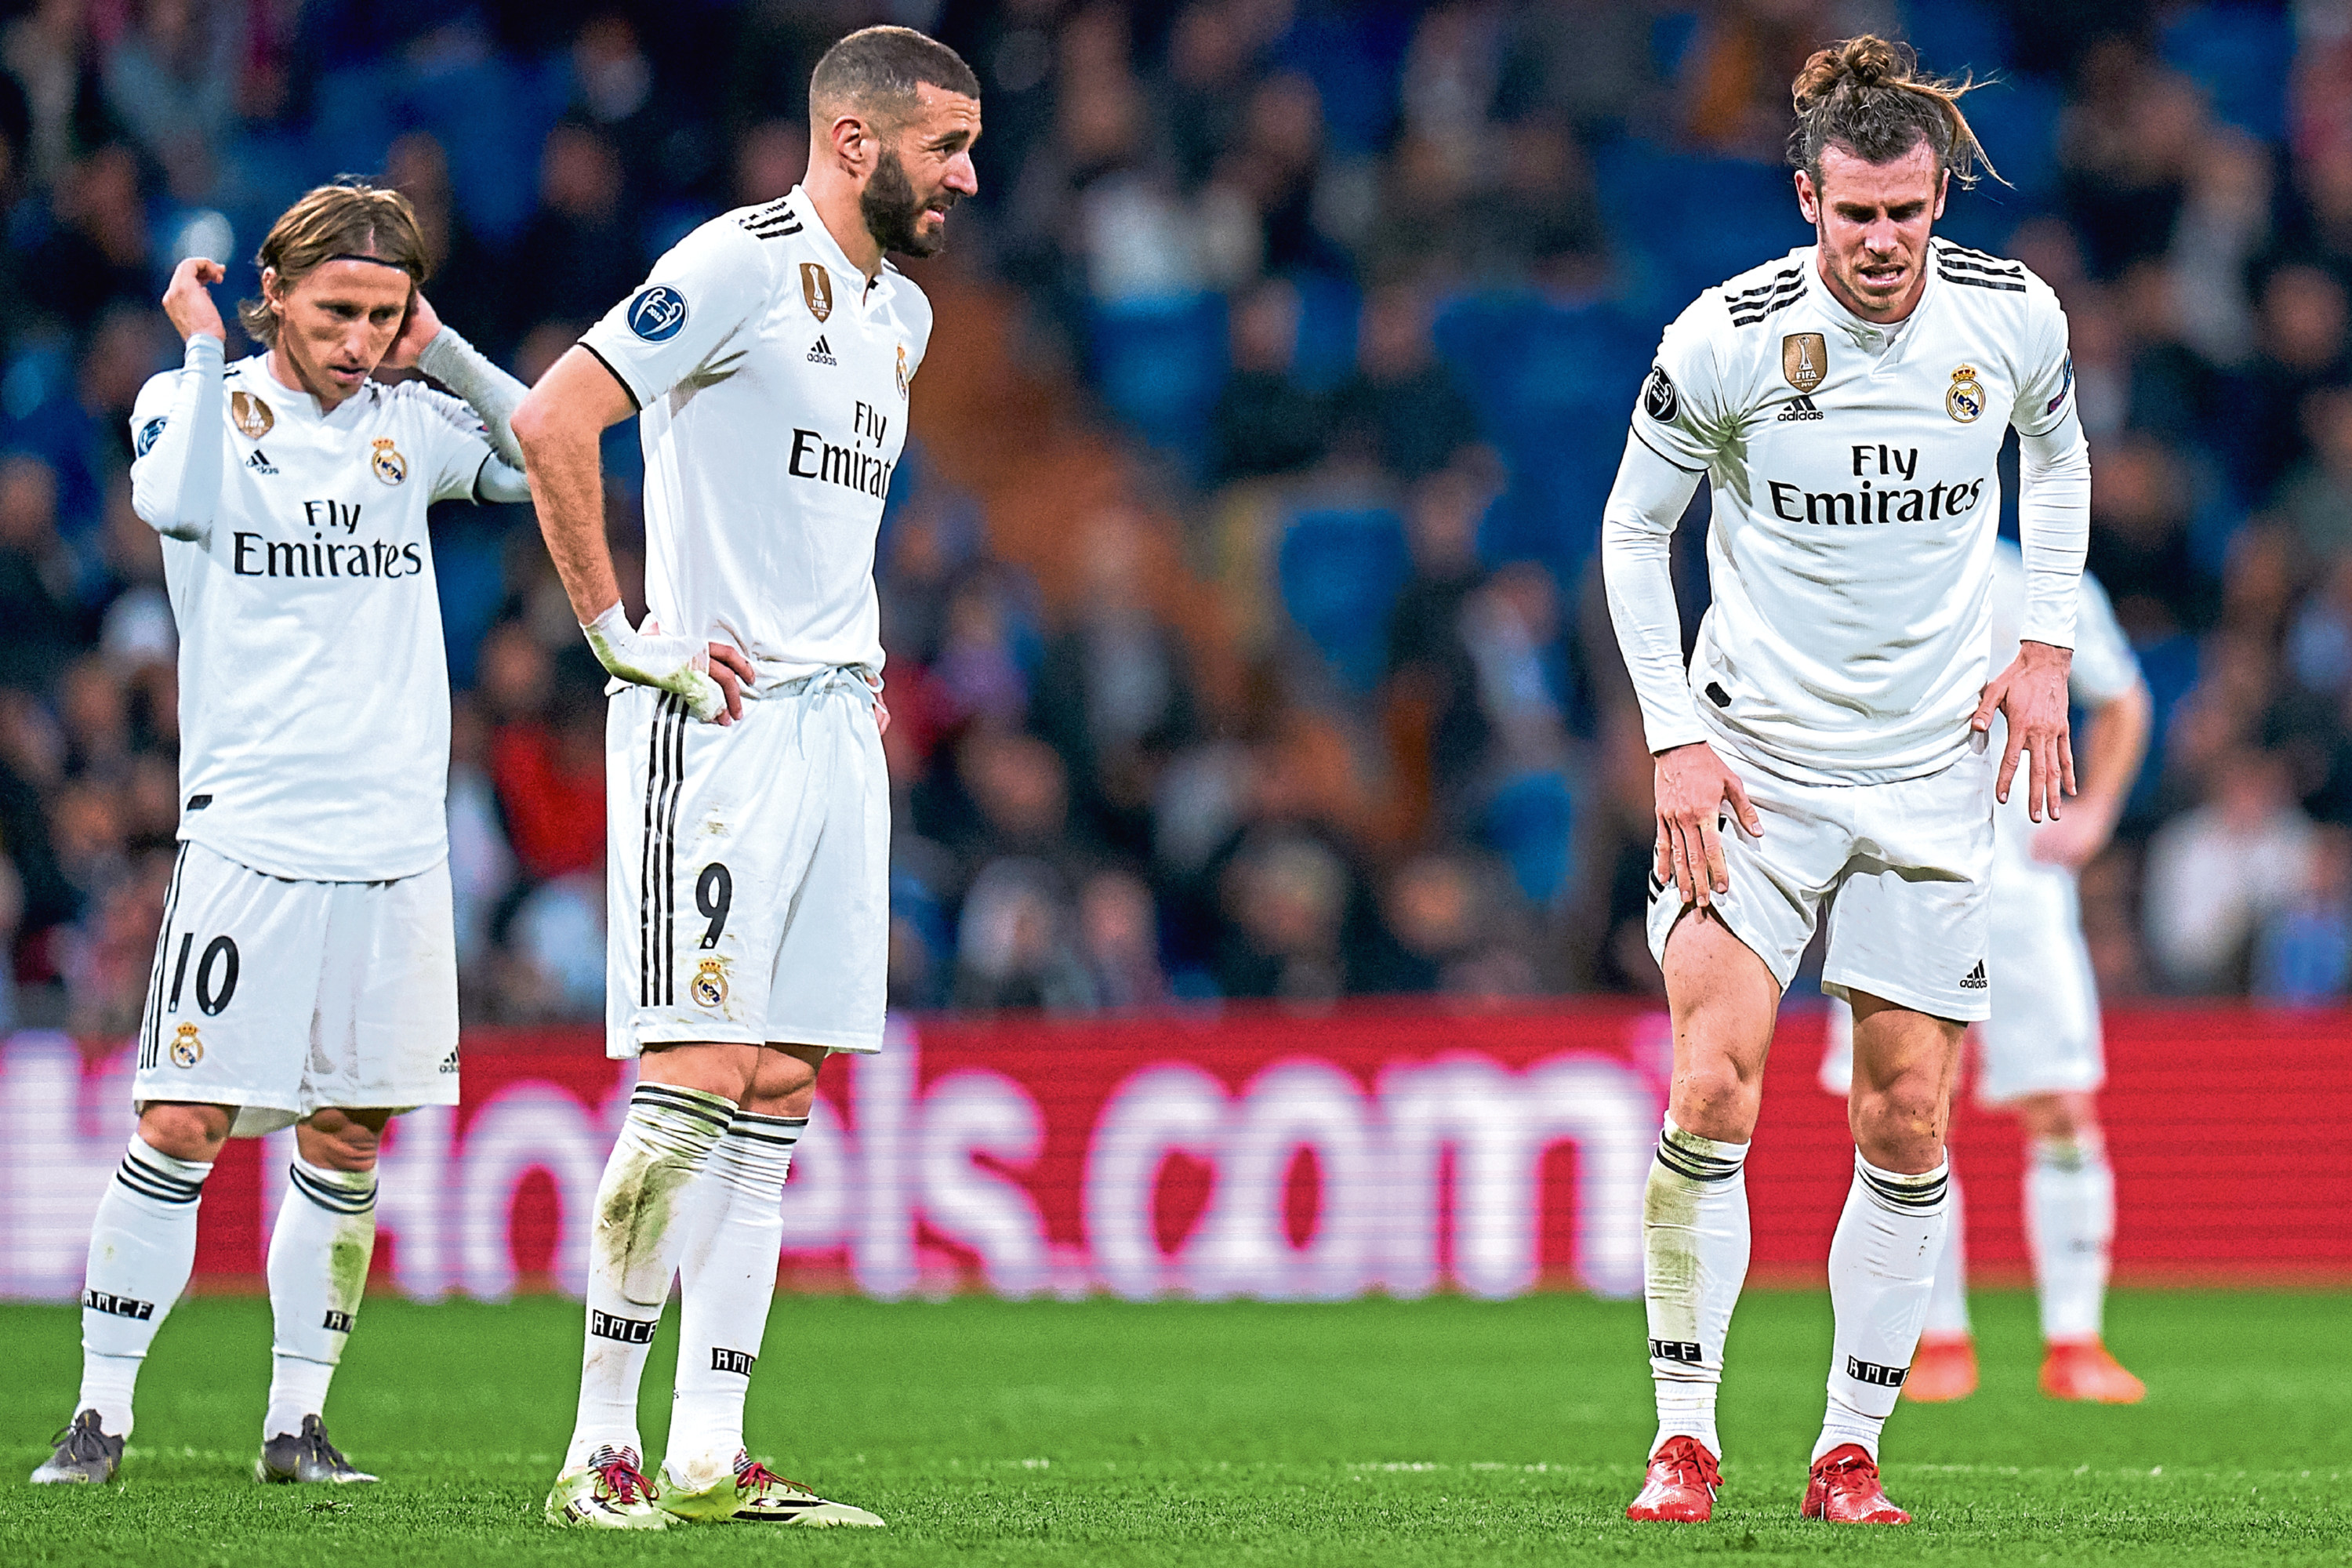 Real Madrid's superstars floundered against Ajax